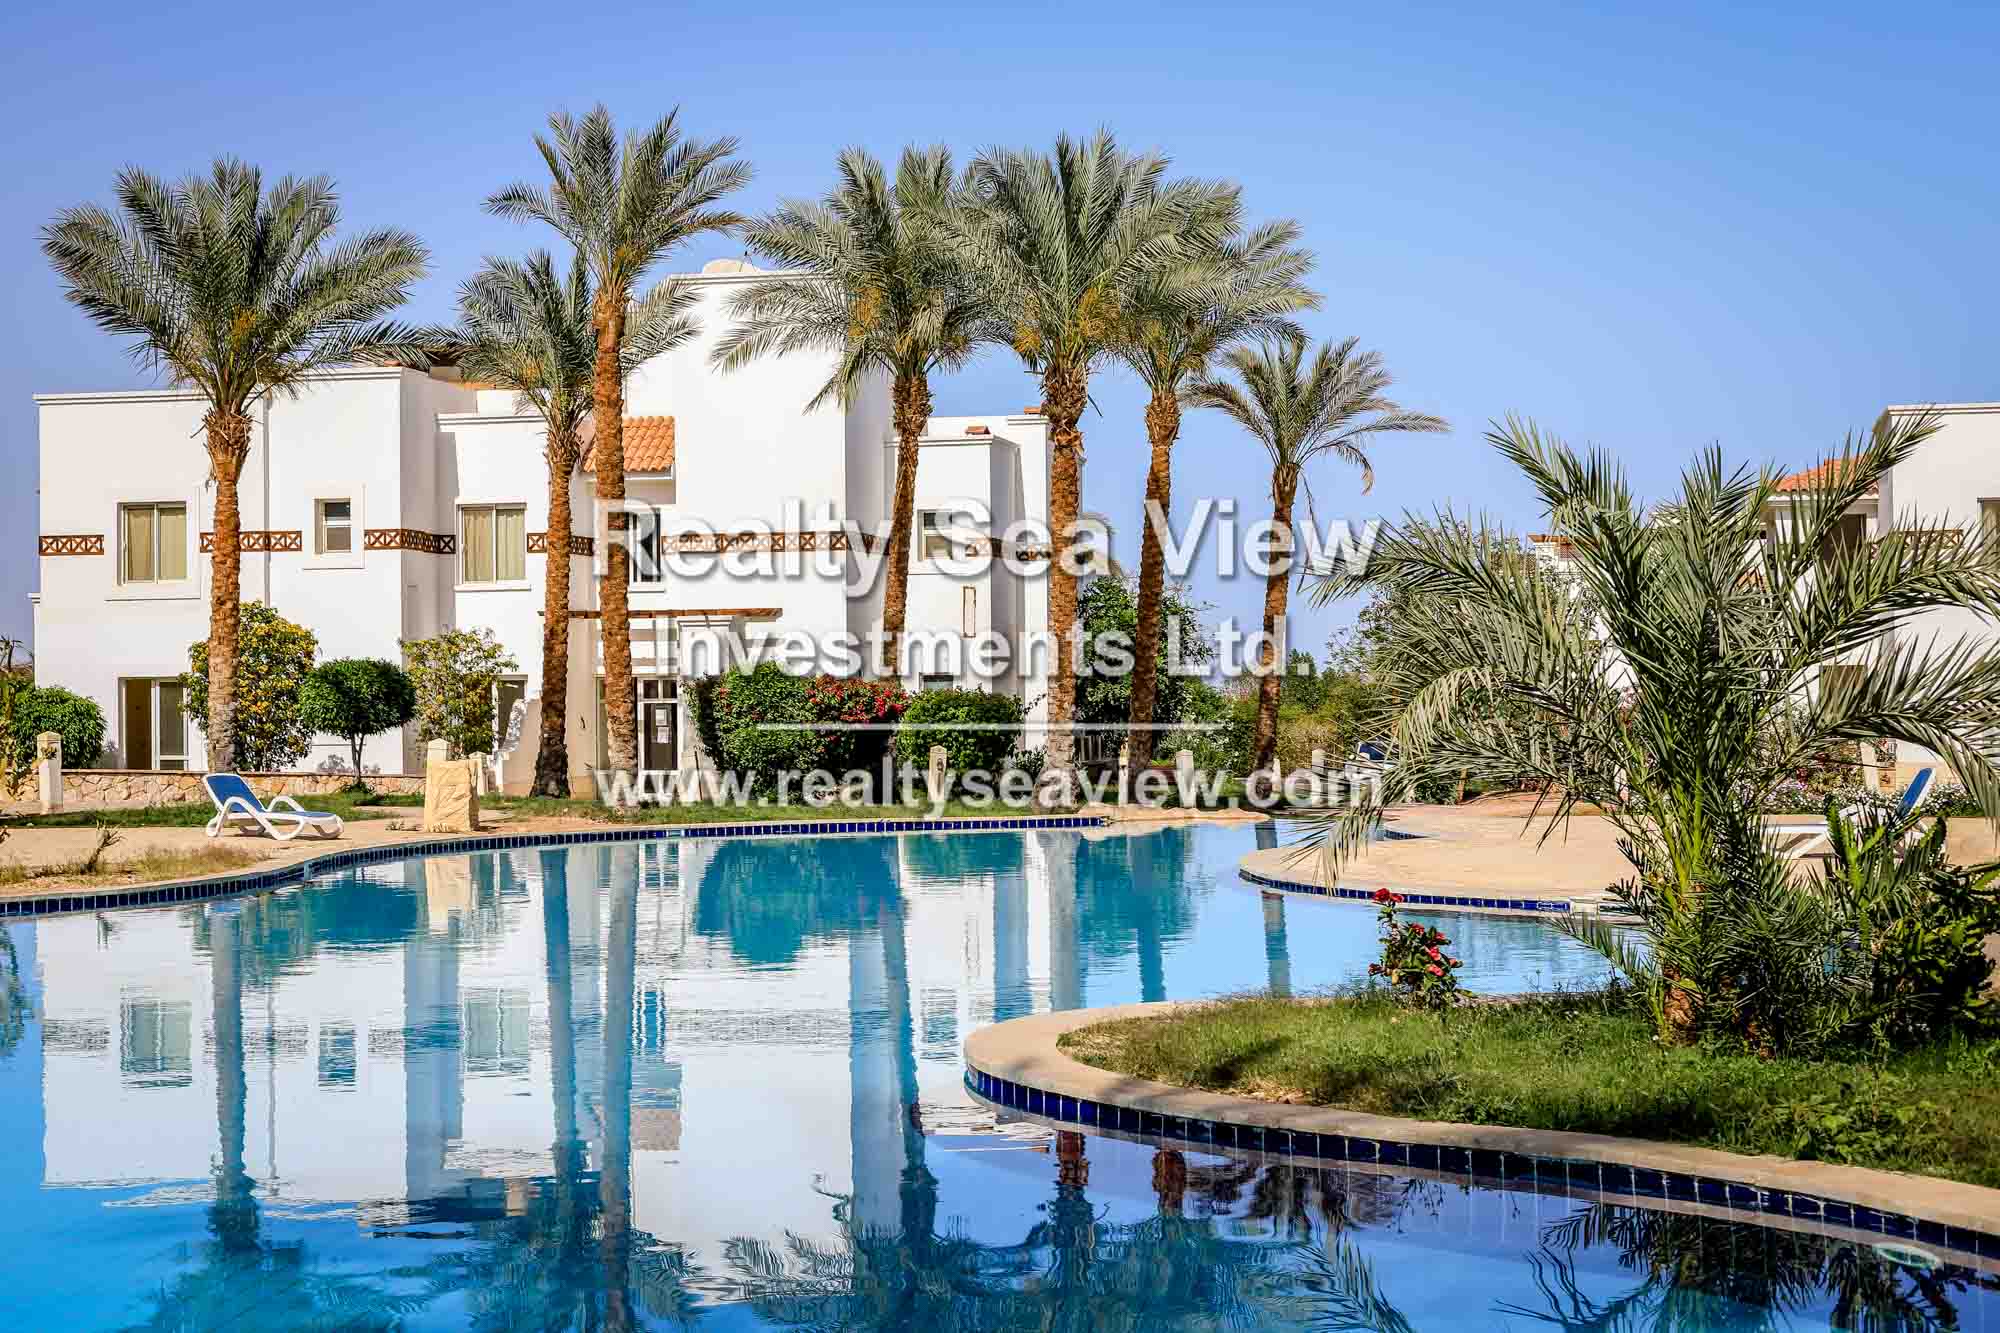 Sunterra residence in Sharm El Sheikh, Egypt